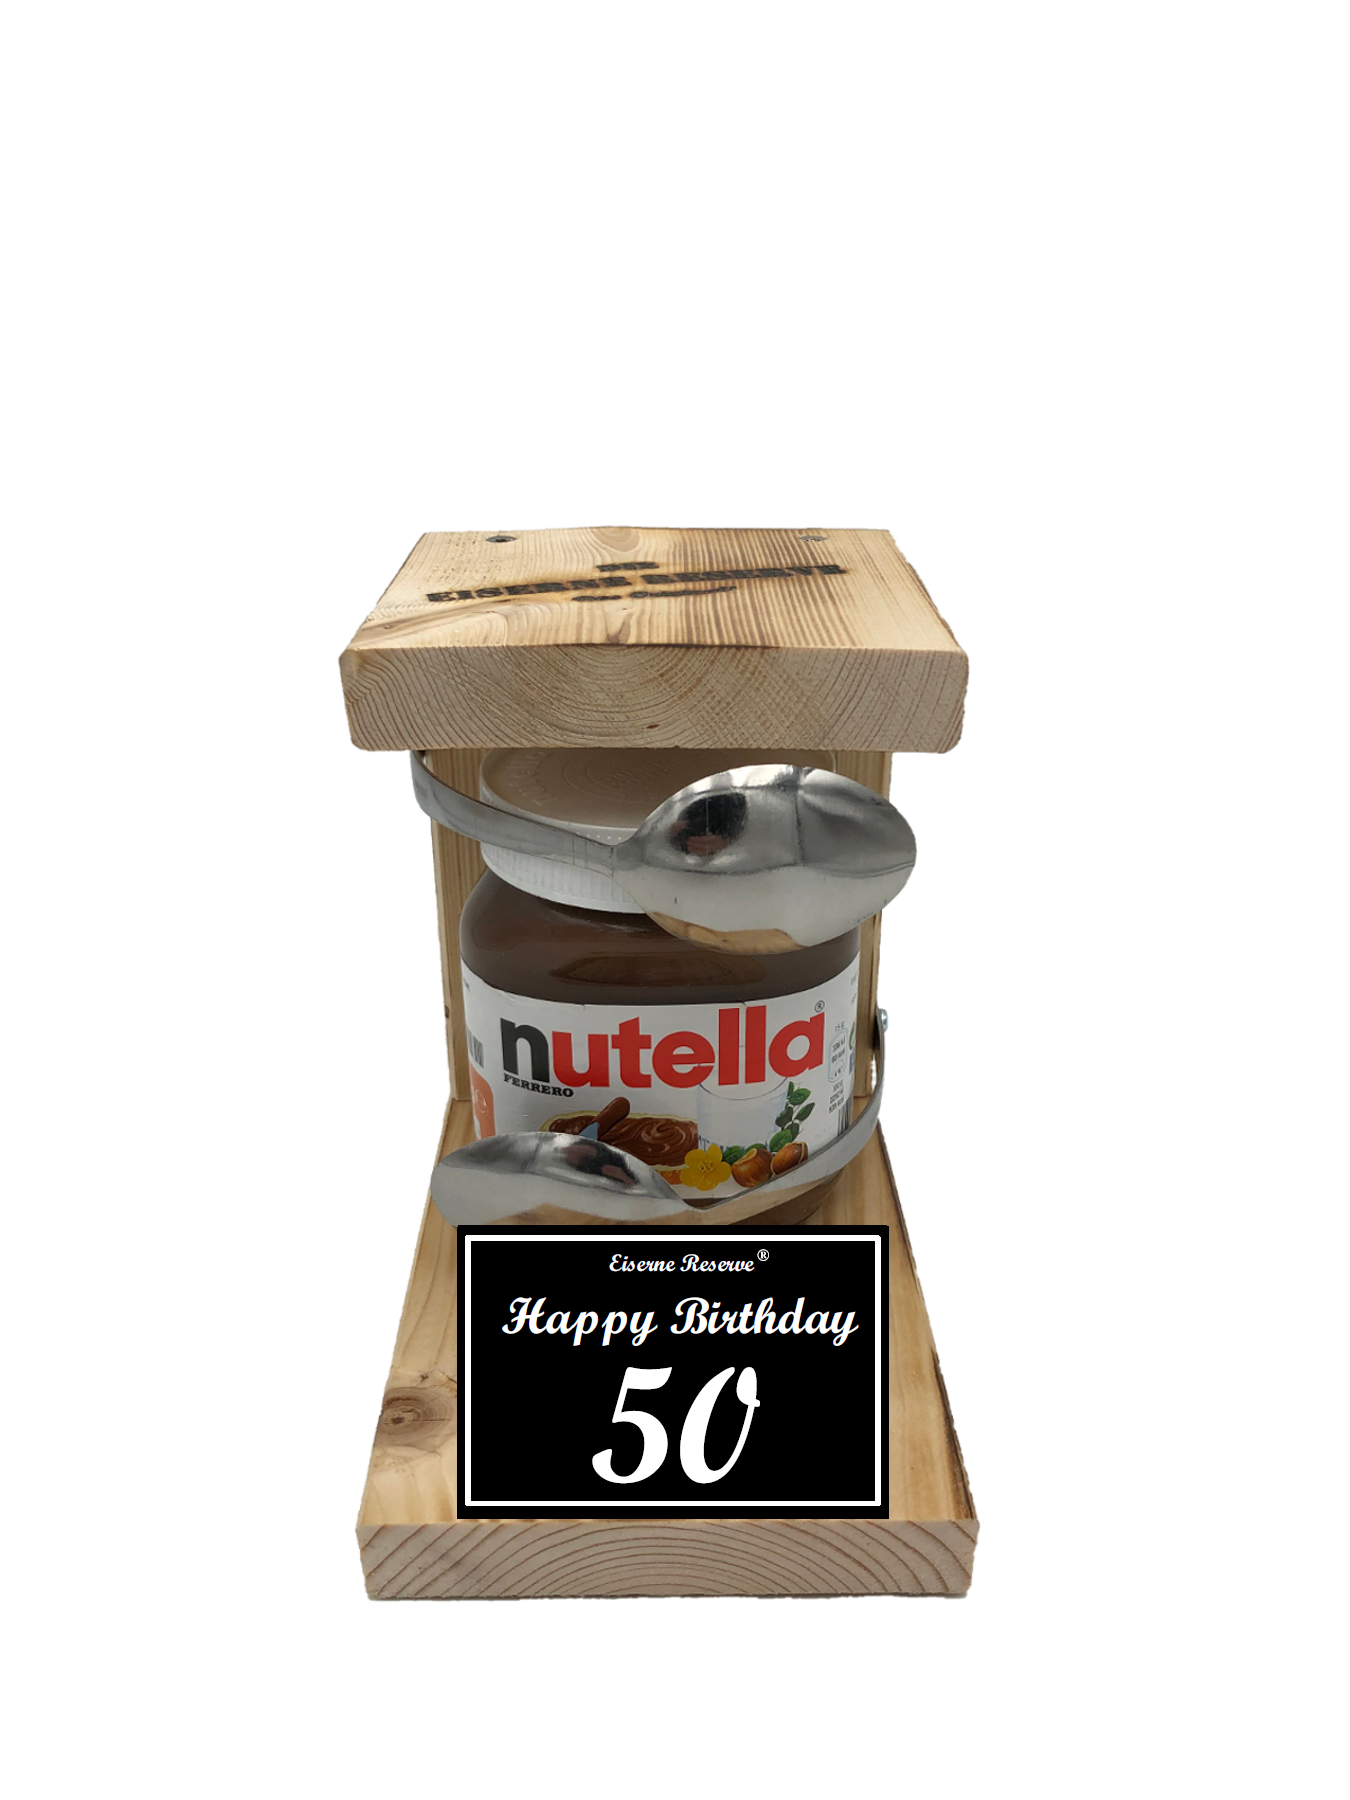 Geburtstag 50 - Eiserne Reserve Löffel Nutella - Geburtstag - Nutella Geschenk